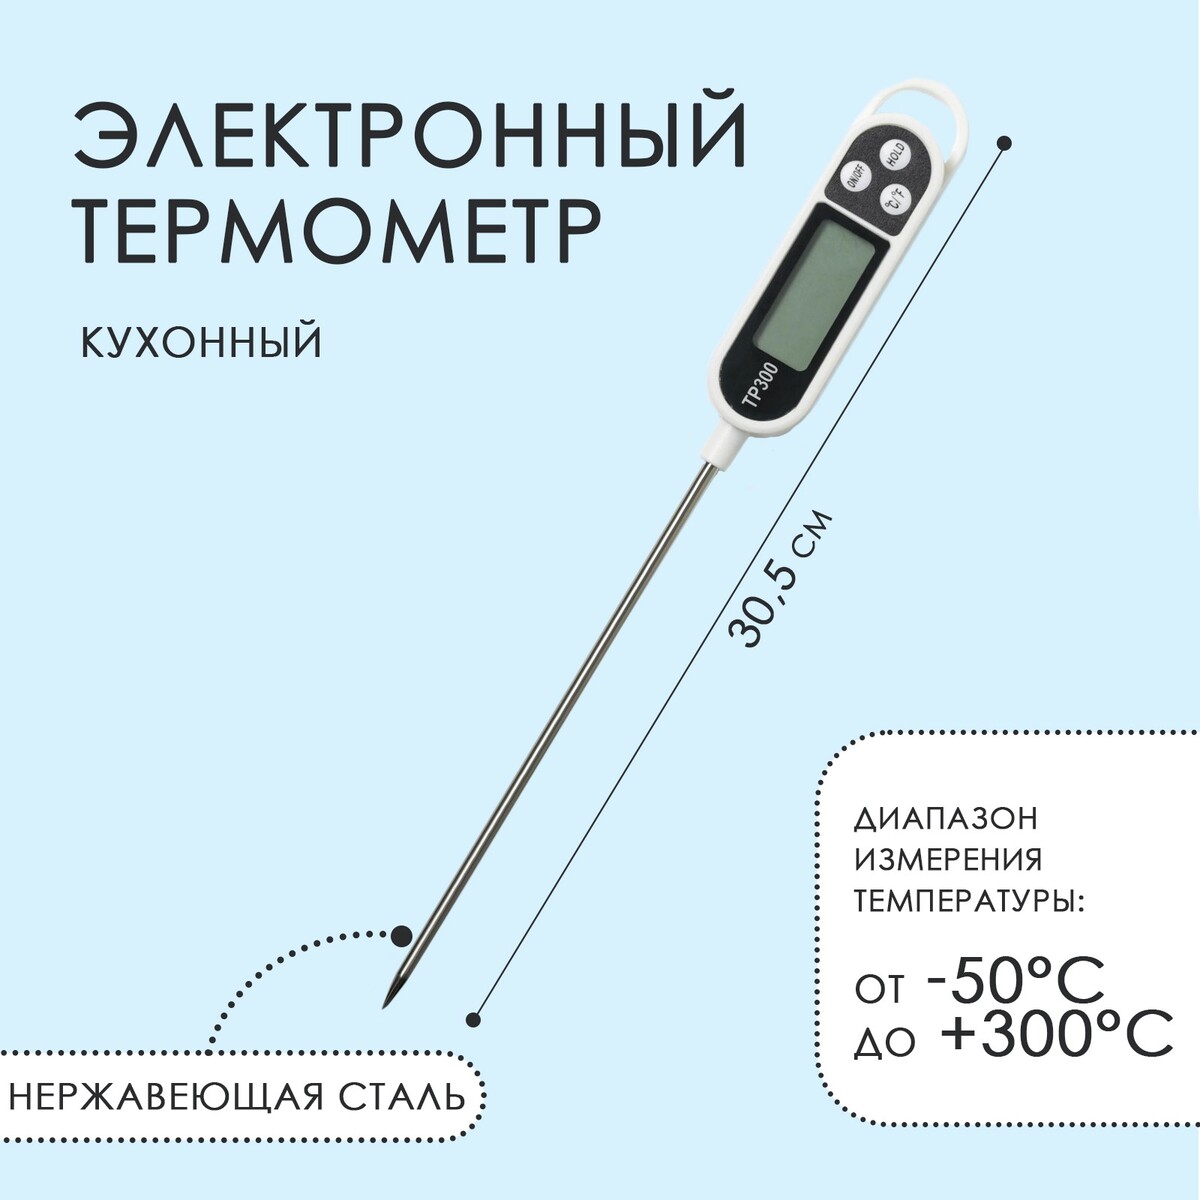 Термометр (термощуп) электронный на батарейках rst оконный термометр с инверсивным зеркальным дисплеем rst01091